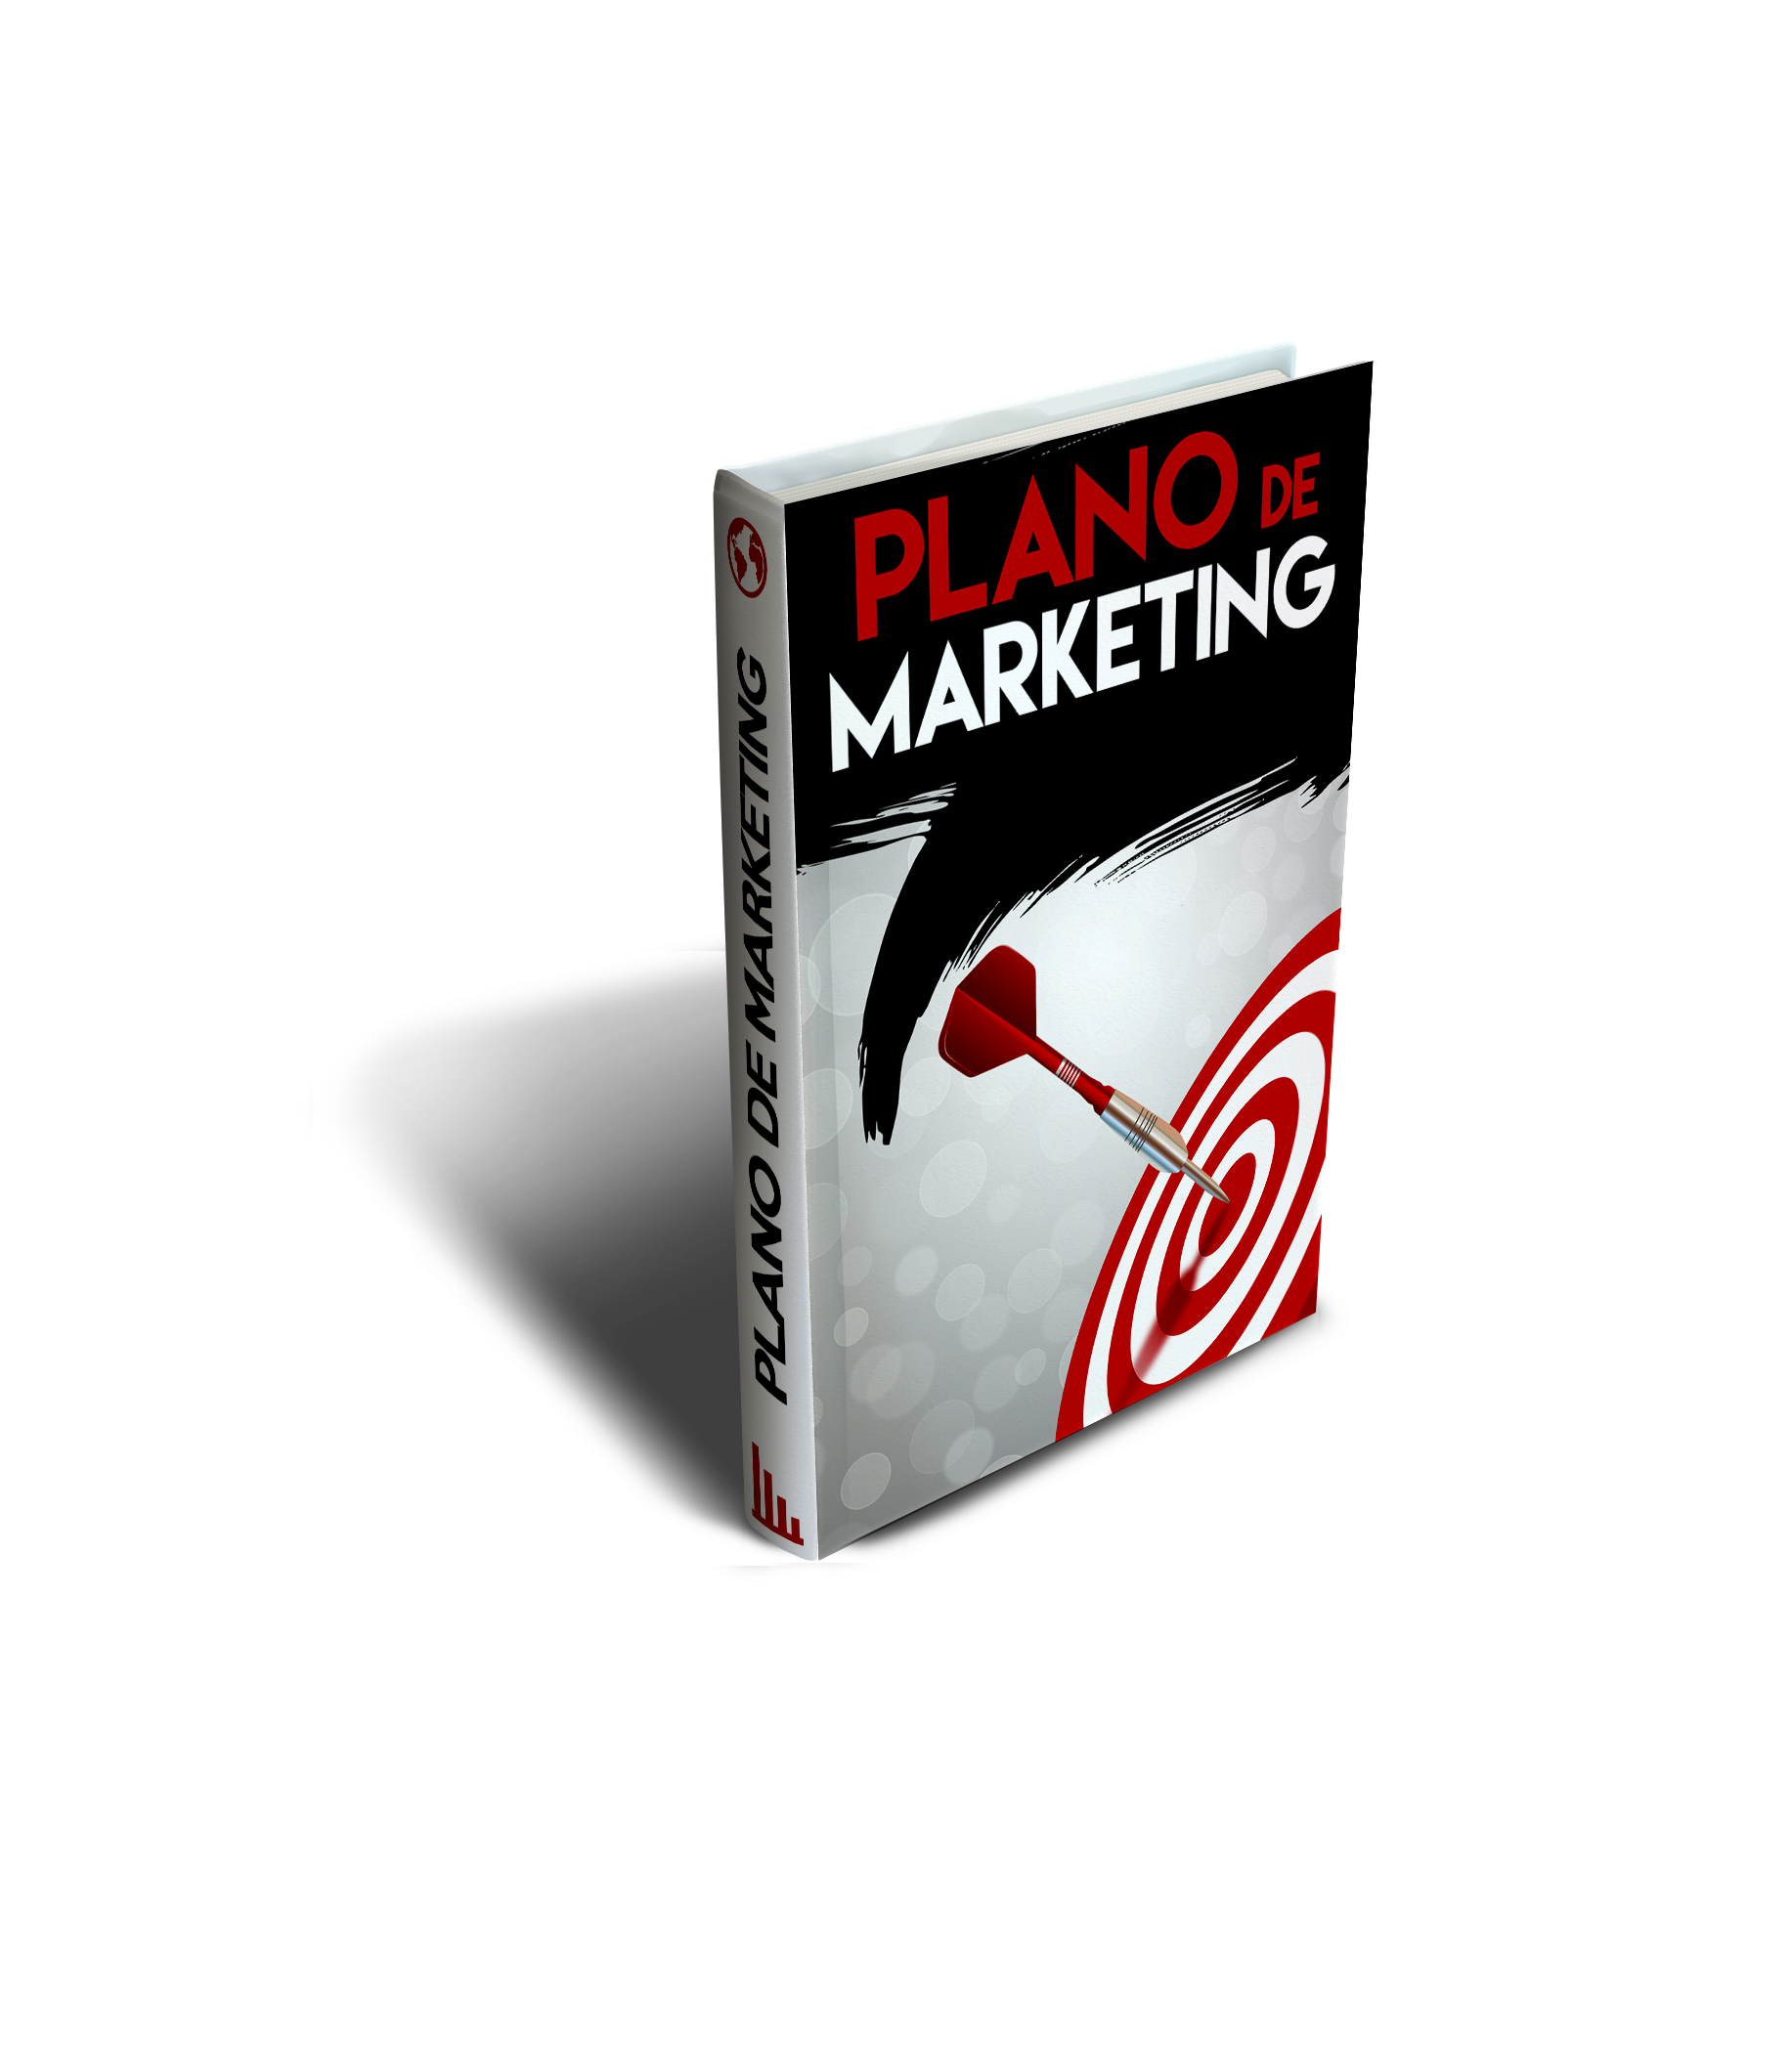 plano de marketing - Plano de Marketing